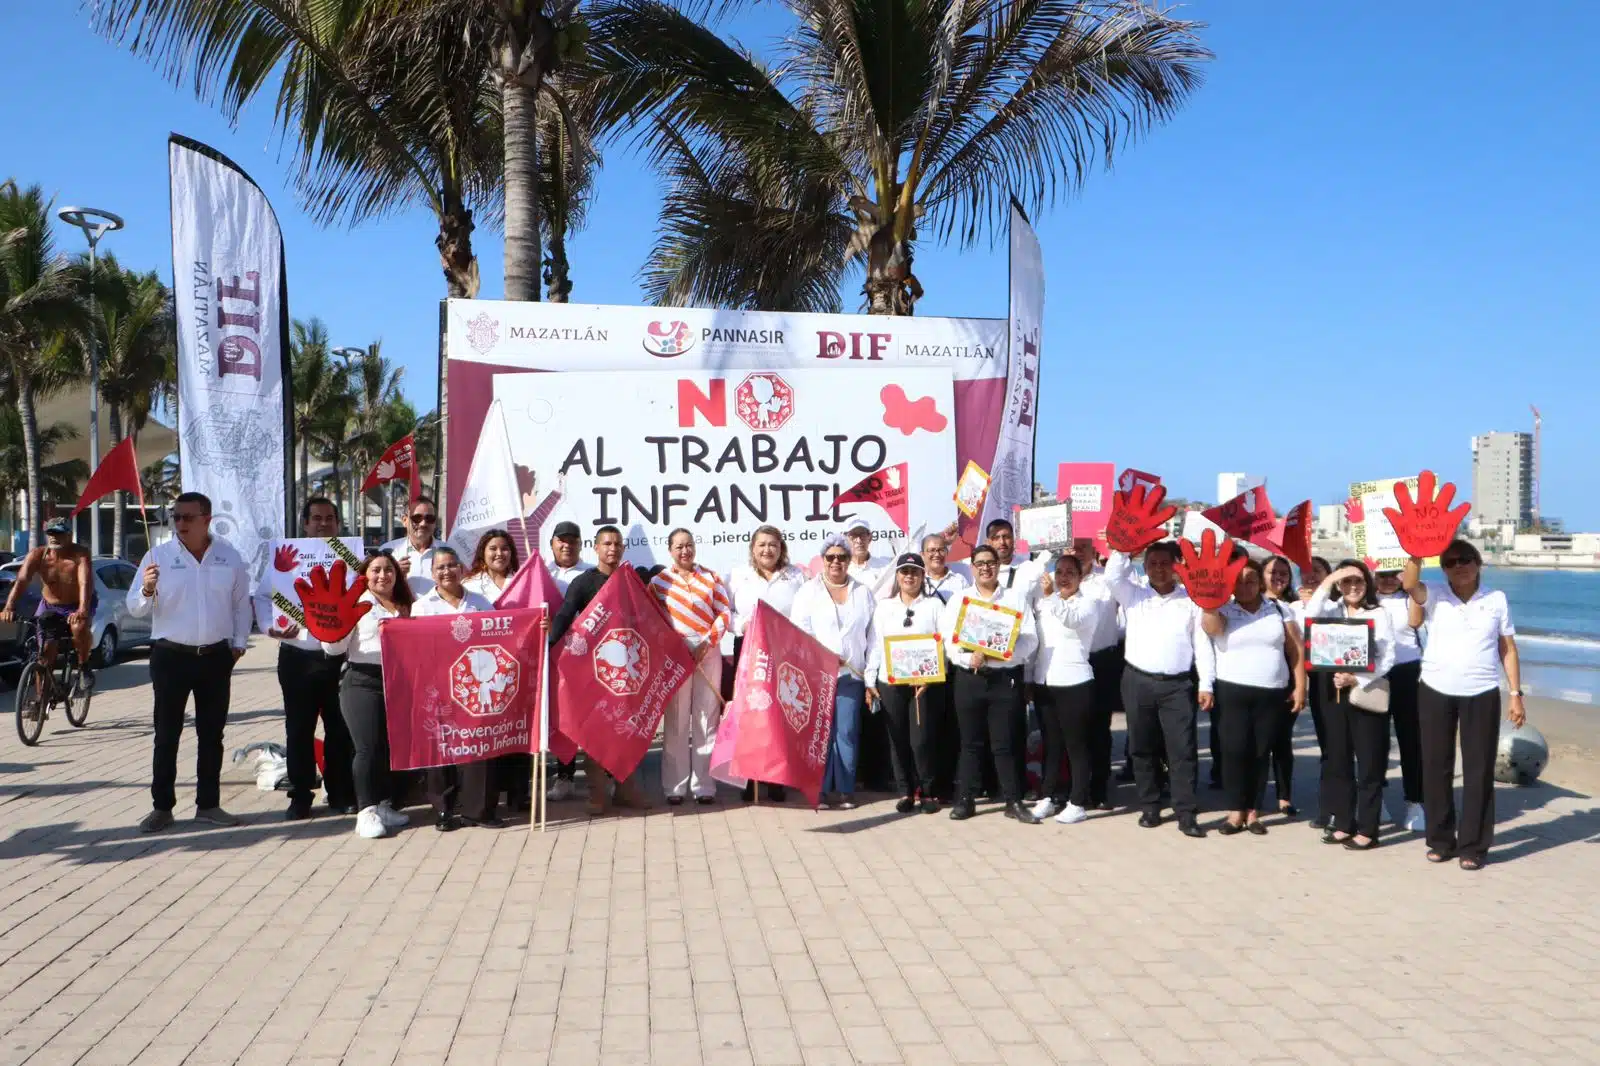 Voluntarios y trabajadores de DIF Mazatlán en campaña en contra del trabajo infantil donde participan ciudadanos